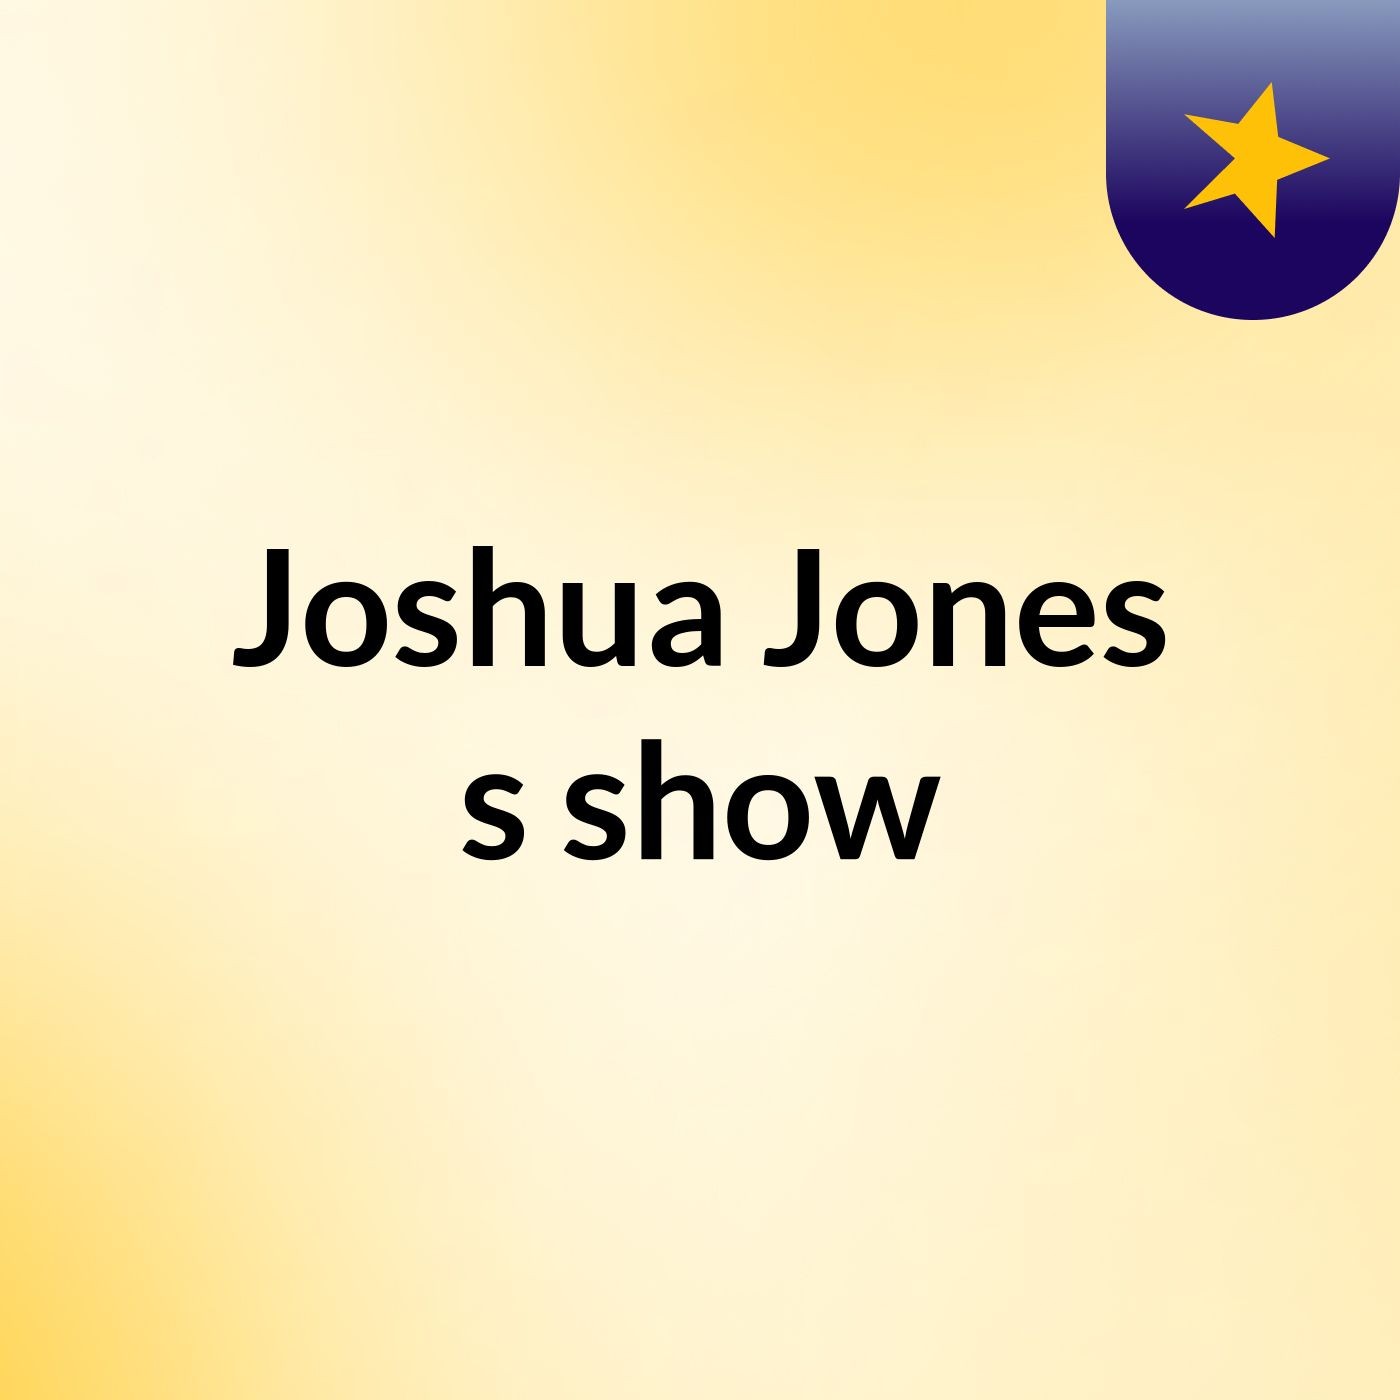 Episode 6 - Joshua Jones's show